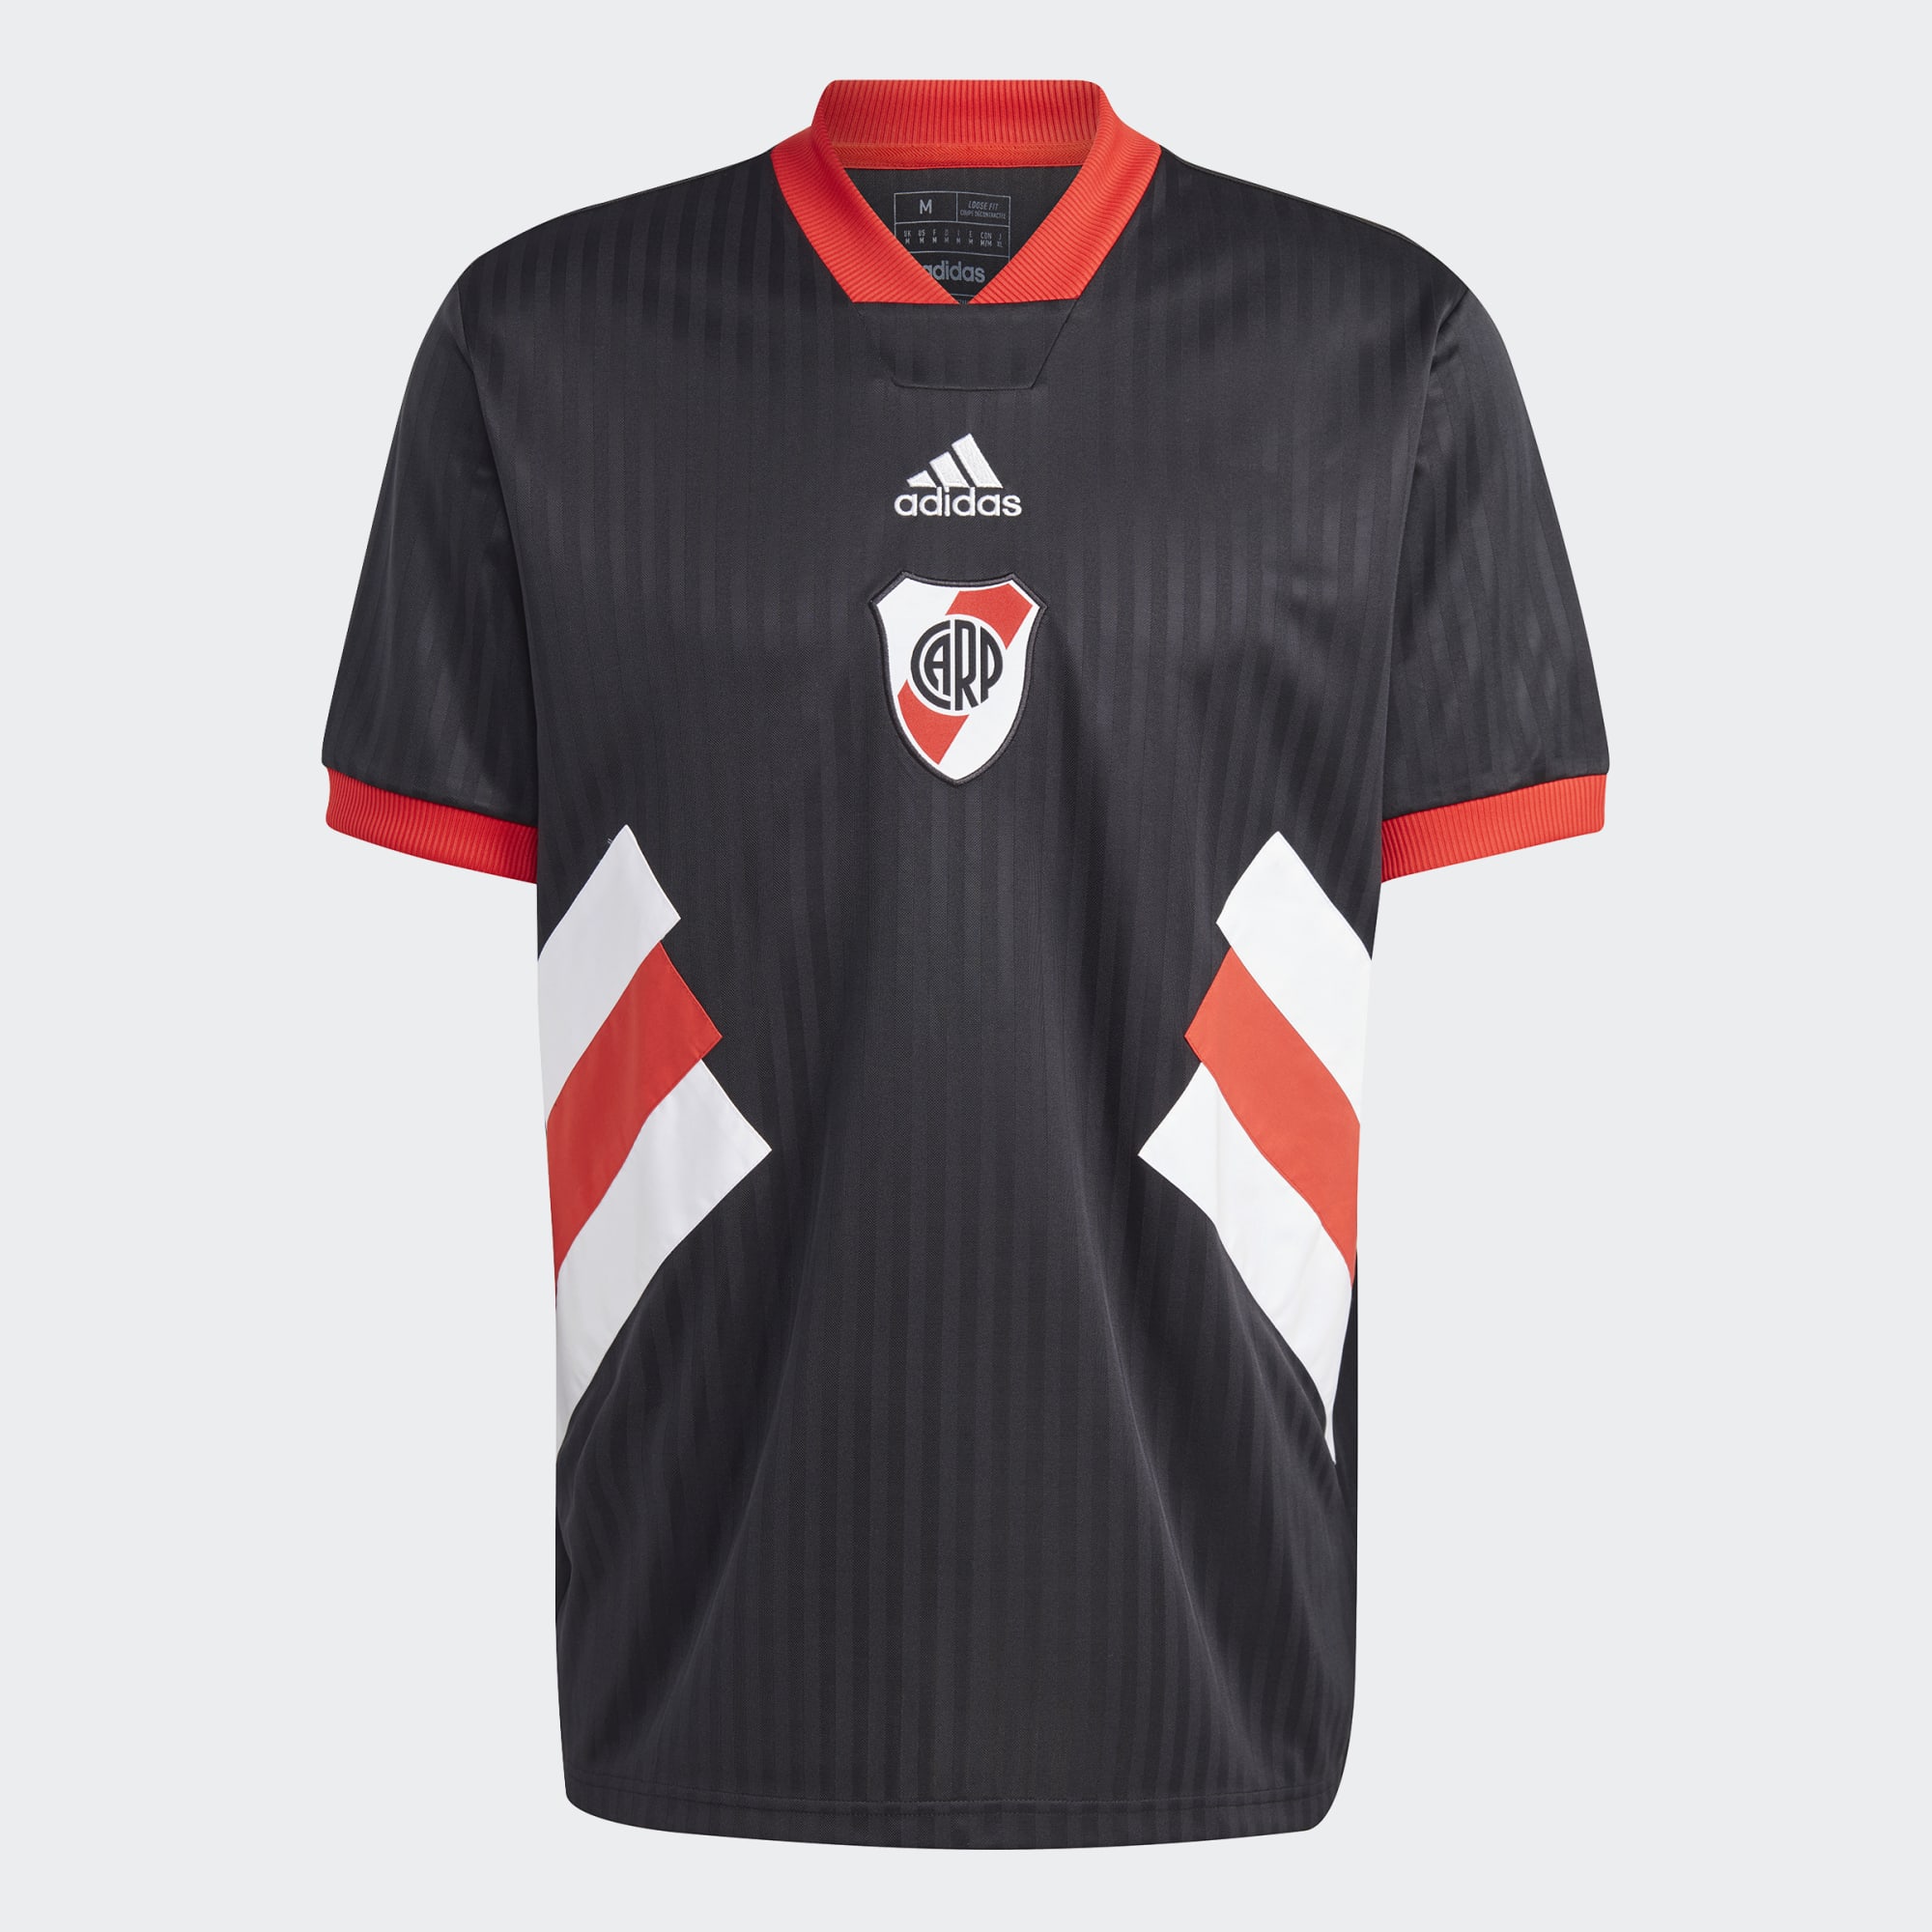 stefanssoccer.com:adidas River Plate Jersey